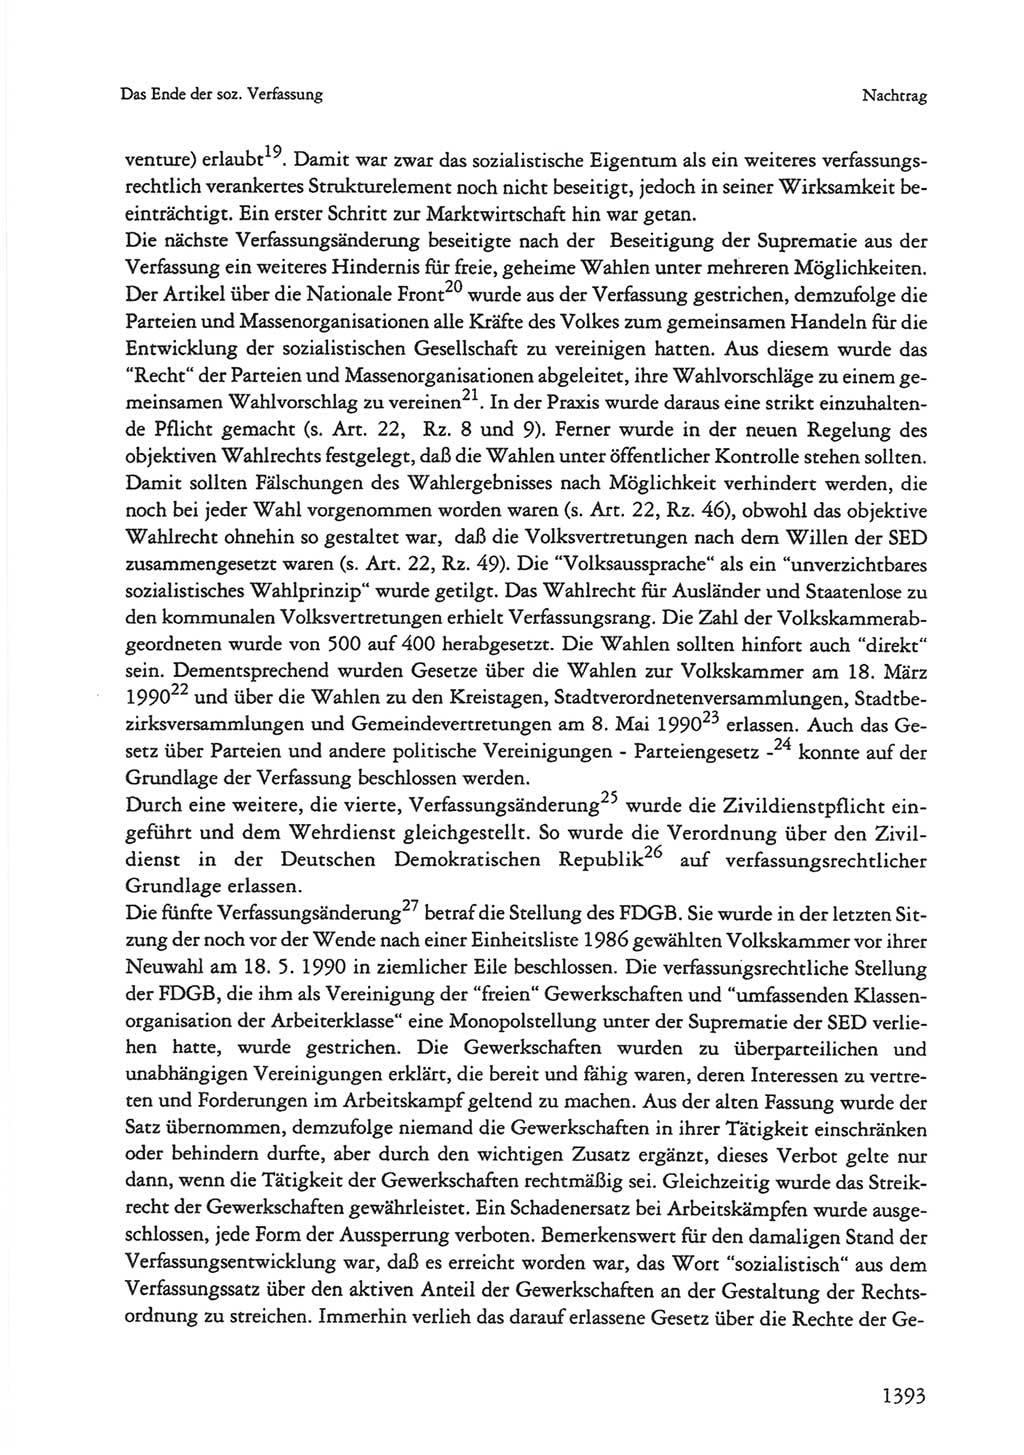 Die sozialistische Verfassung der Deutschen Demokratischen Republik (DDR), Kommentar mit einem Nachtrag 1997, Seite 1393 (Soz. Verf. DDR Komm. Nachtr. 1997, S. 1393)